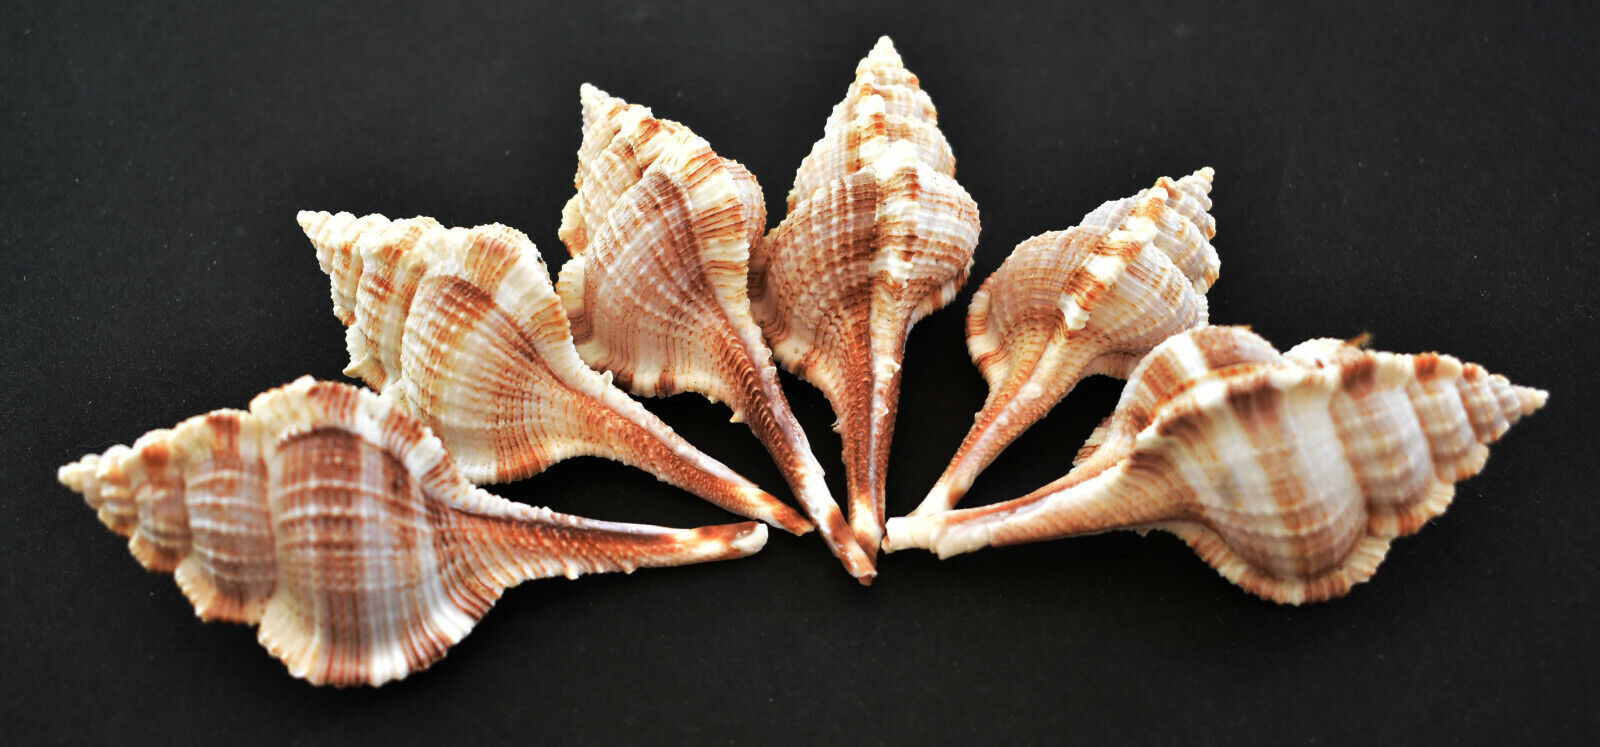 6 Beautiful Unique Murex Haustellum Shells 2.5